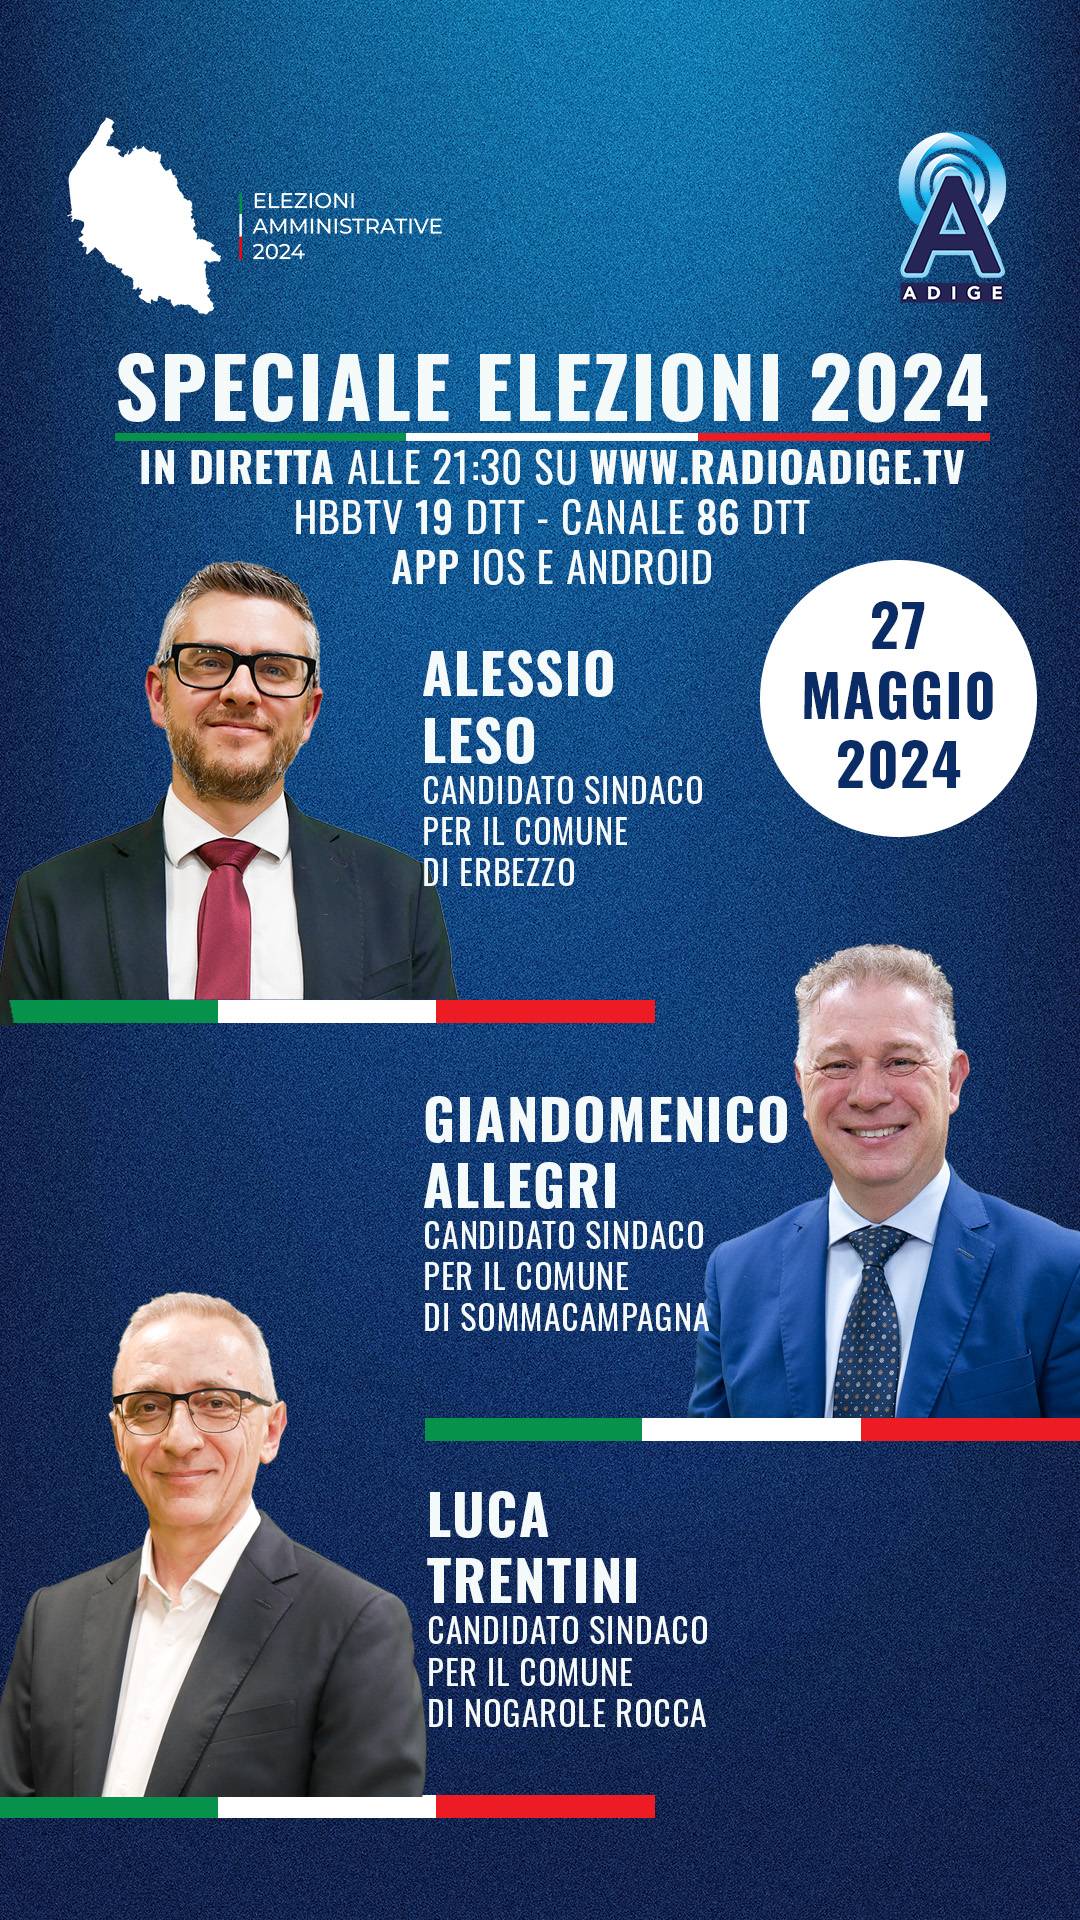 Speciale Elezioni 2024: questa sera Alessio Leso, Giandomenico Allegri e Luca Trentini a RadioAdige.Tv